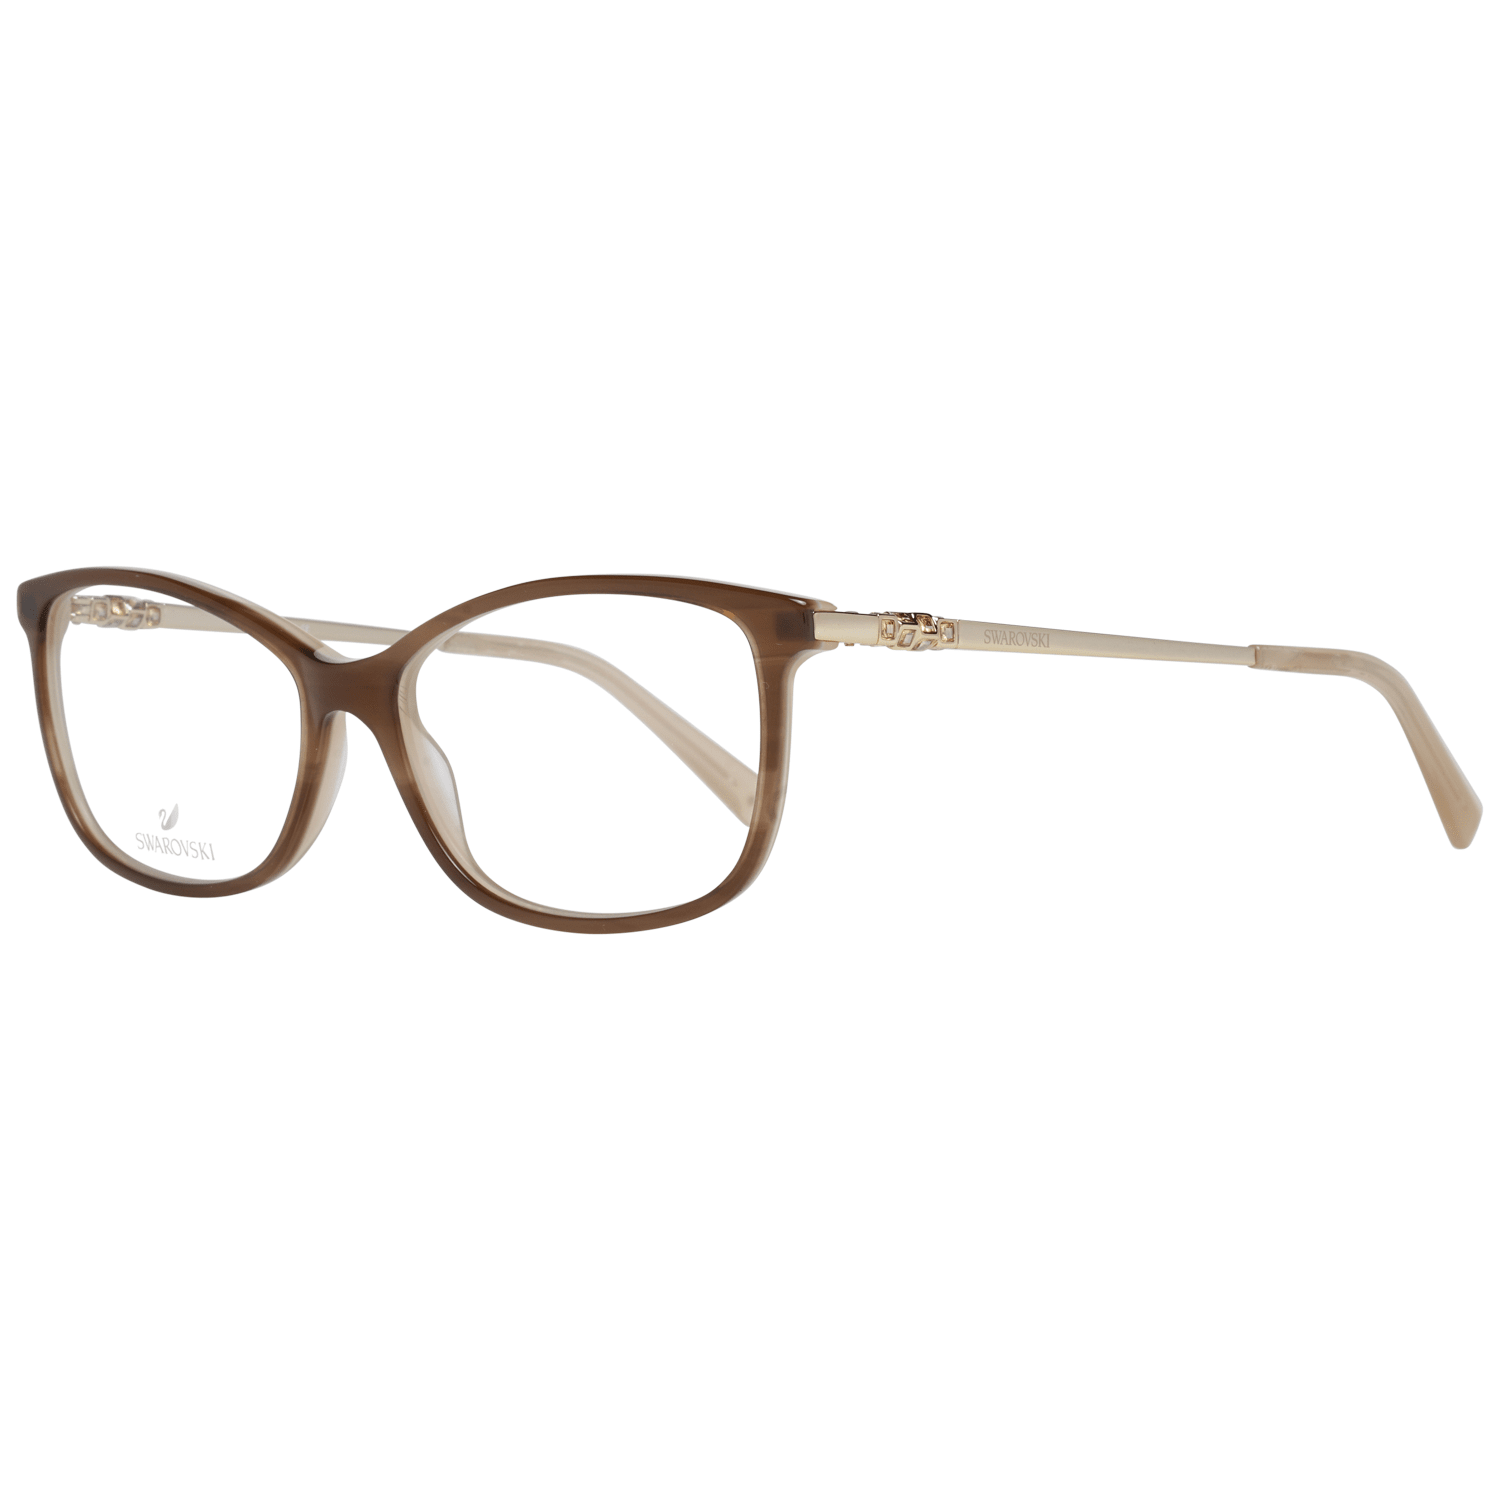 Swarovski Women's Optical Frames Eyewear Brown SK5285 56047